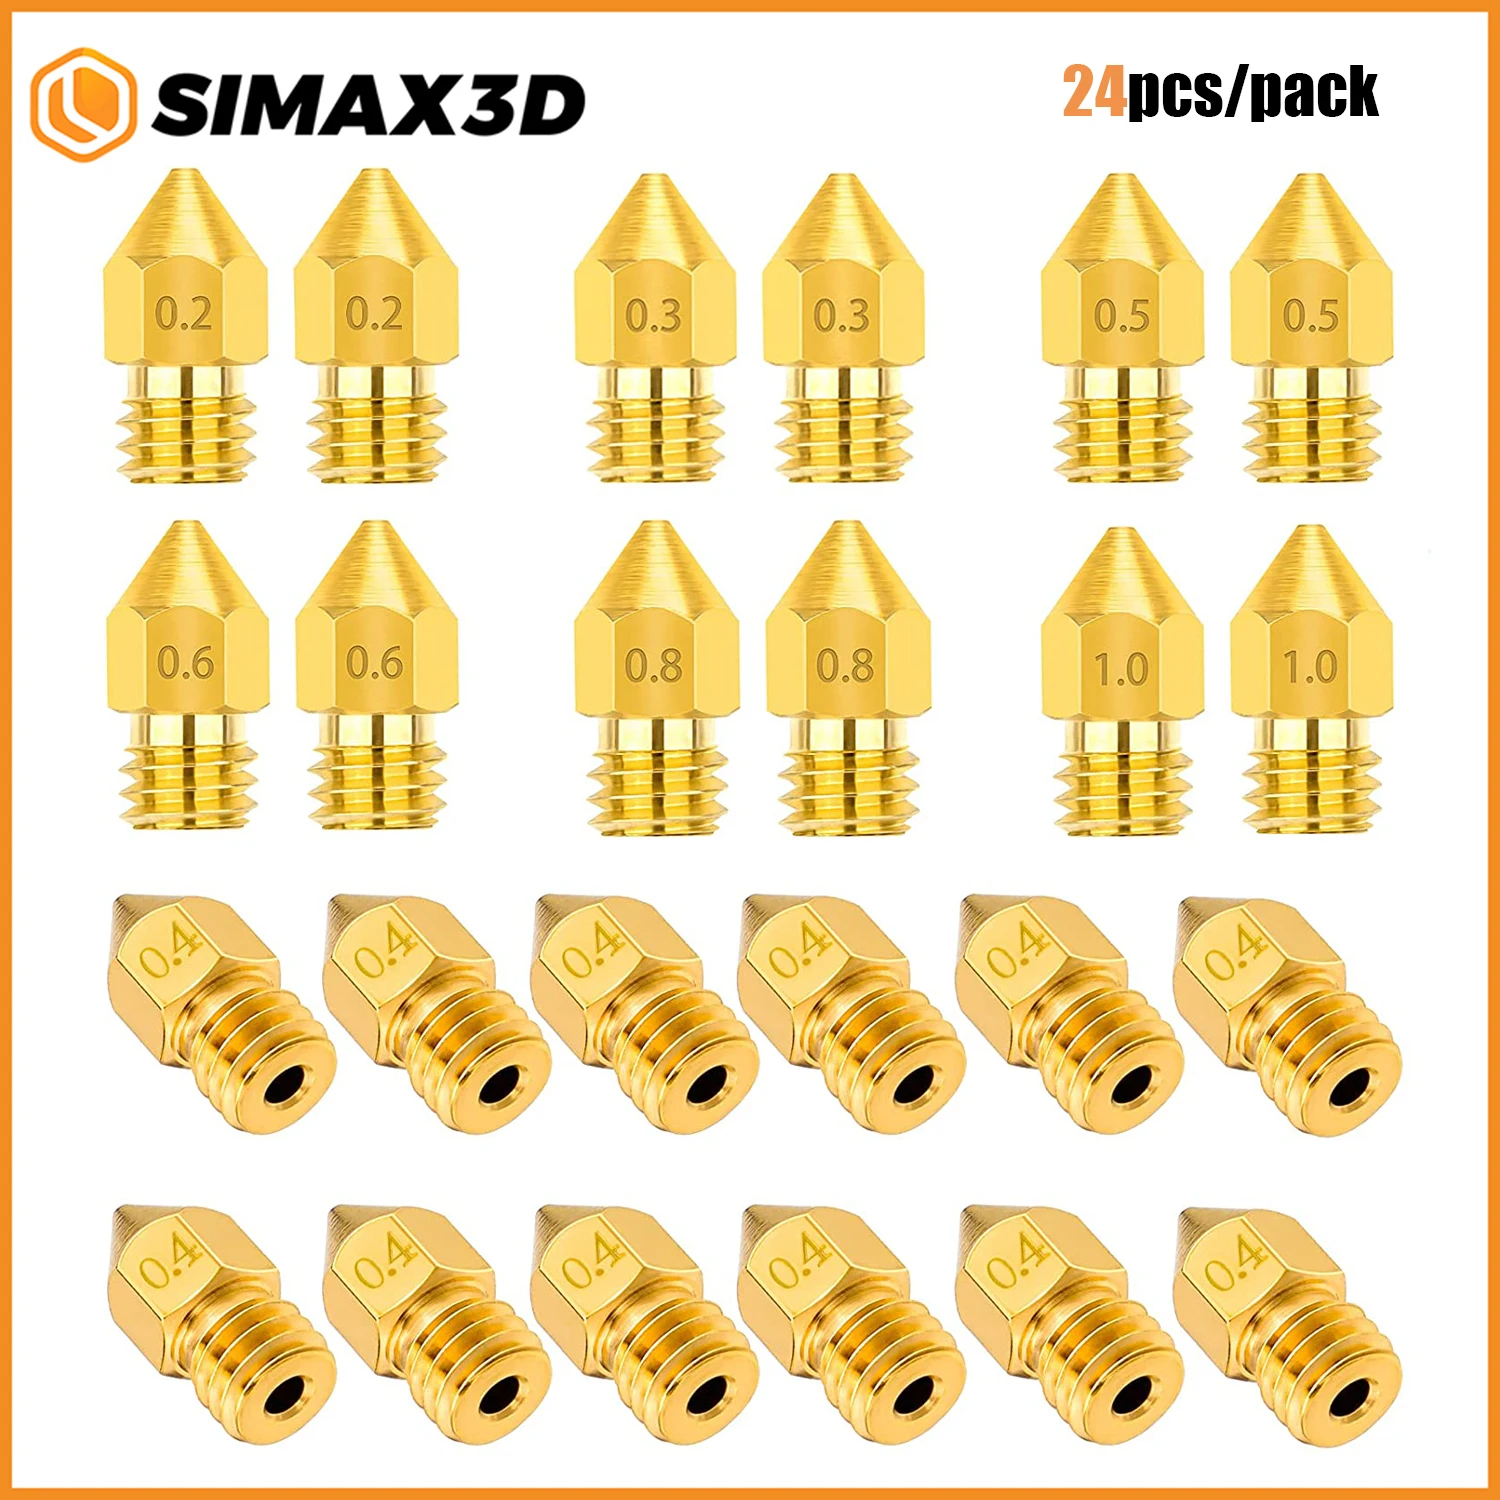 SIMAX3D 24 шт. Набор Латунных сопел для экструдера MK8 0,2 мм, 0,3 мм, 0,4 мм, 0,5 мм, 0,6 мм, 0,8 мм, 1,0 мм для Makerbot CR-10 Ender 3 5